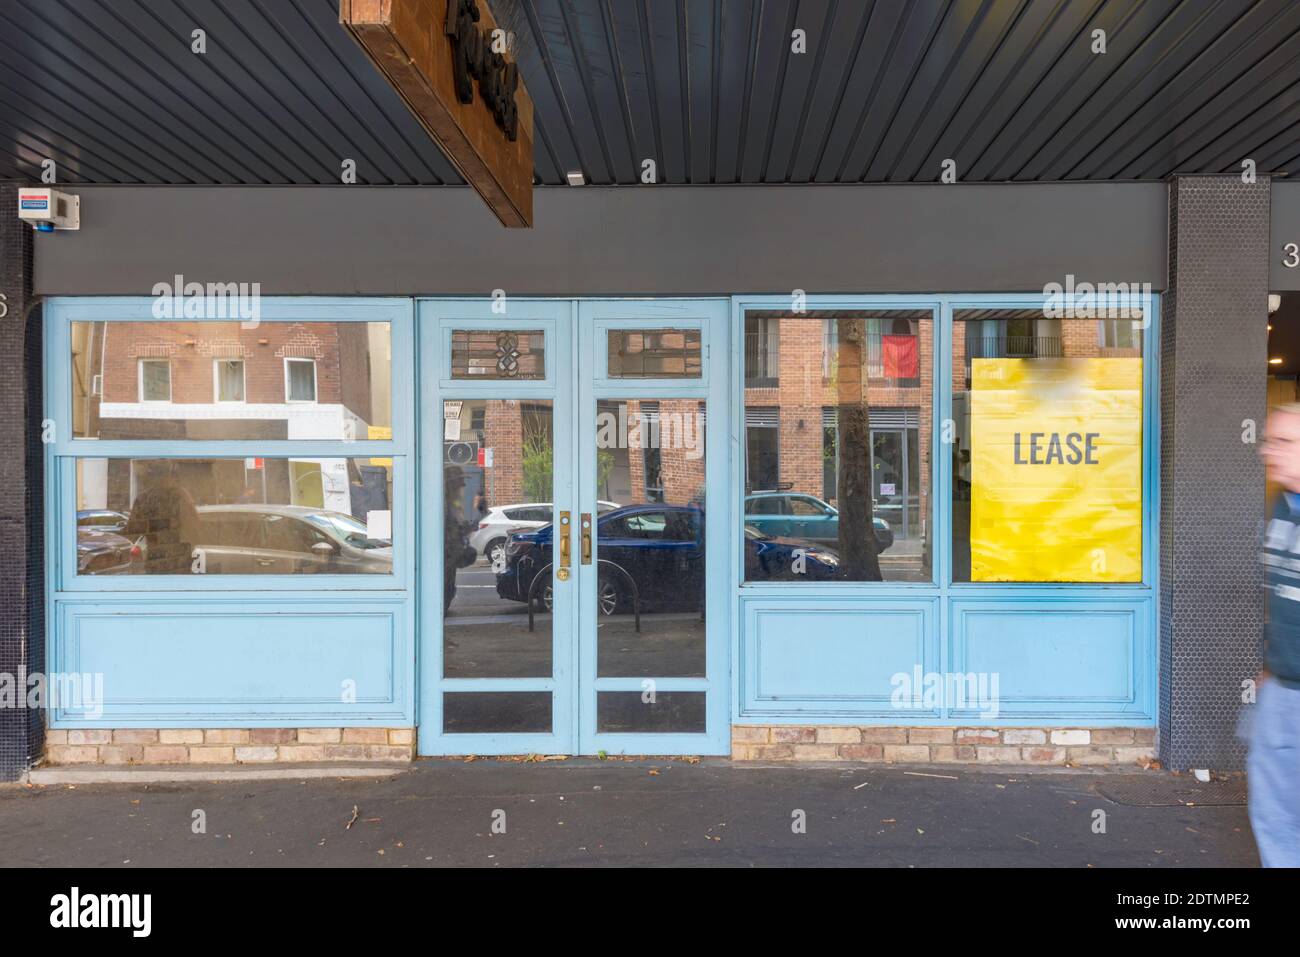 Un magasin anonyme vide avec une enseigne pour location dans la fenêtre à Sydney, en Australie Banque D'Images